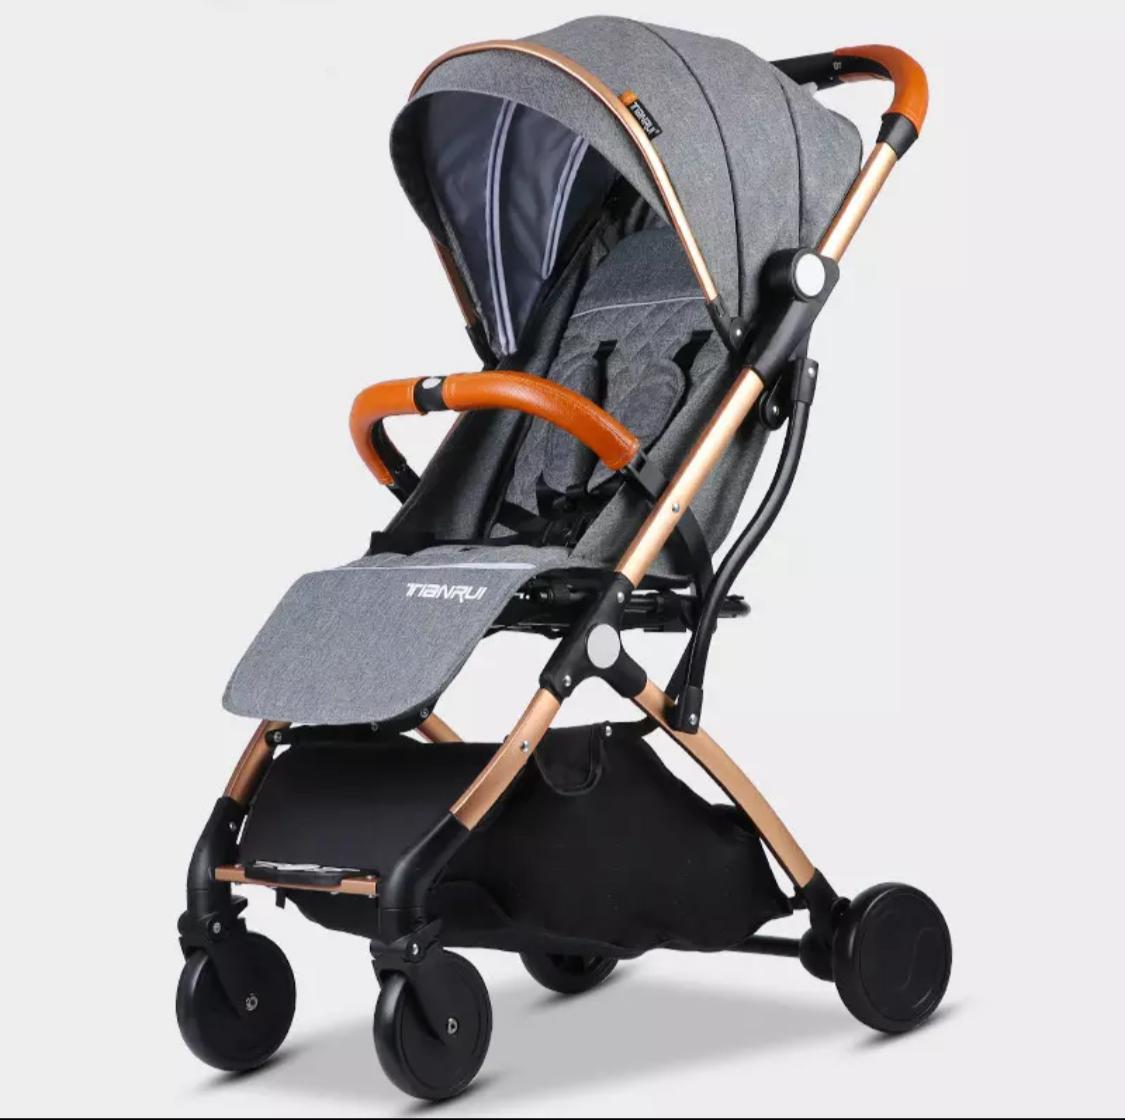 Flying stroller for children, Tianrui brand